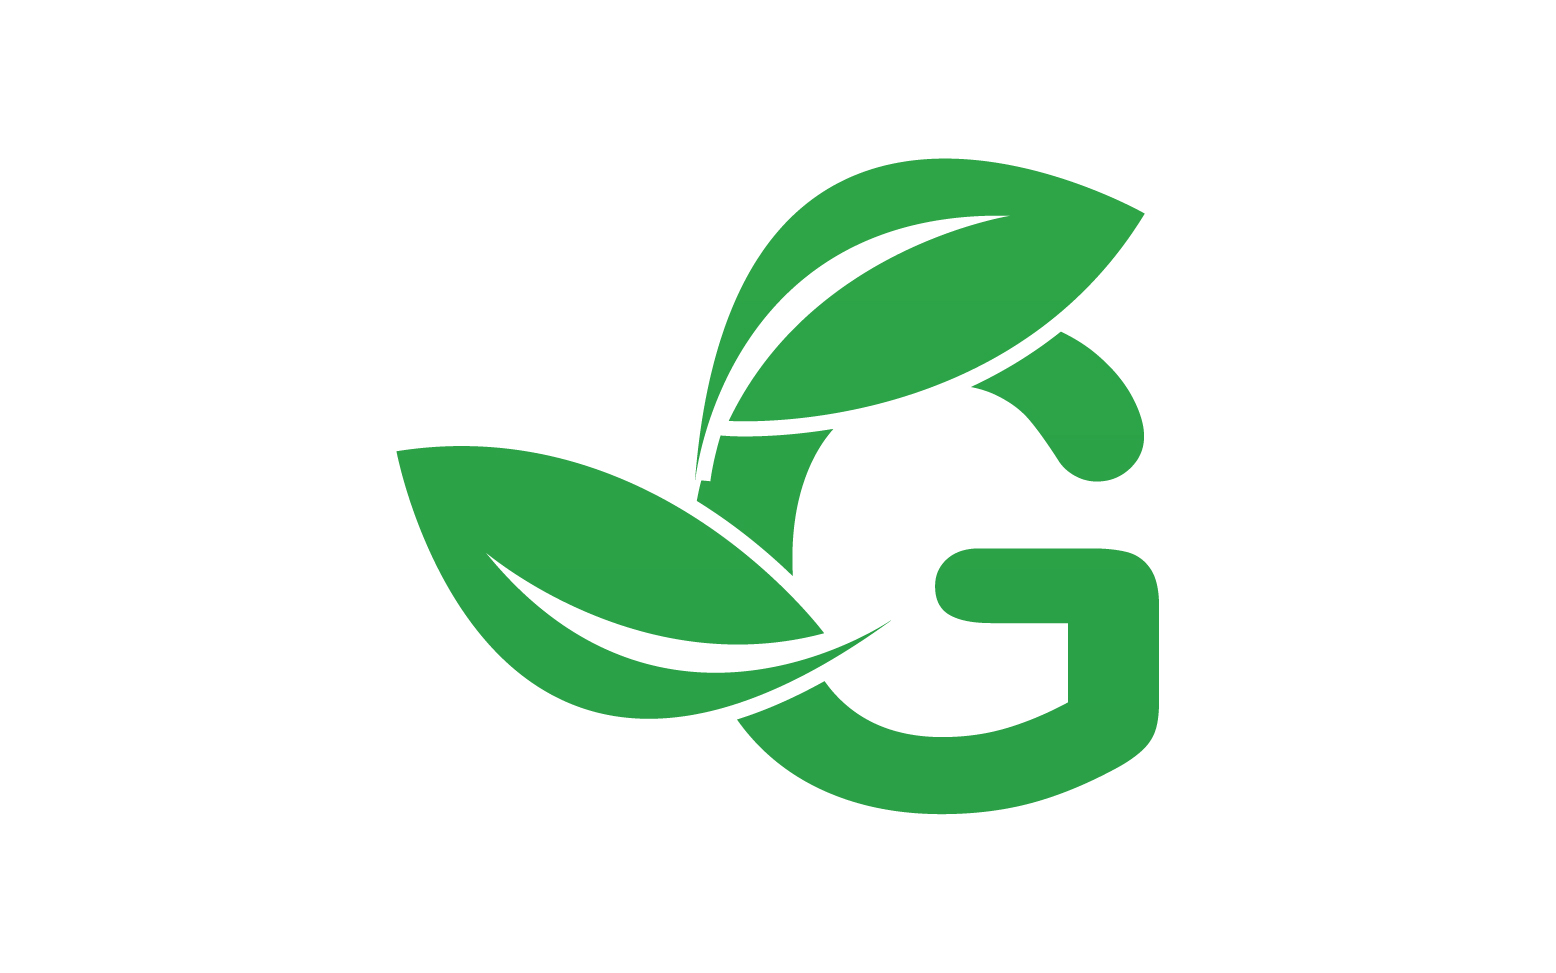 G letter leaf green logo icon version v46